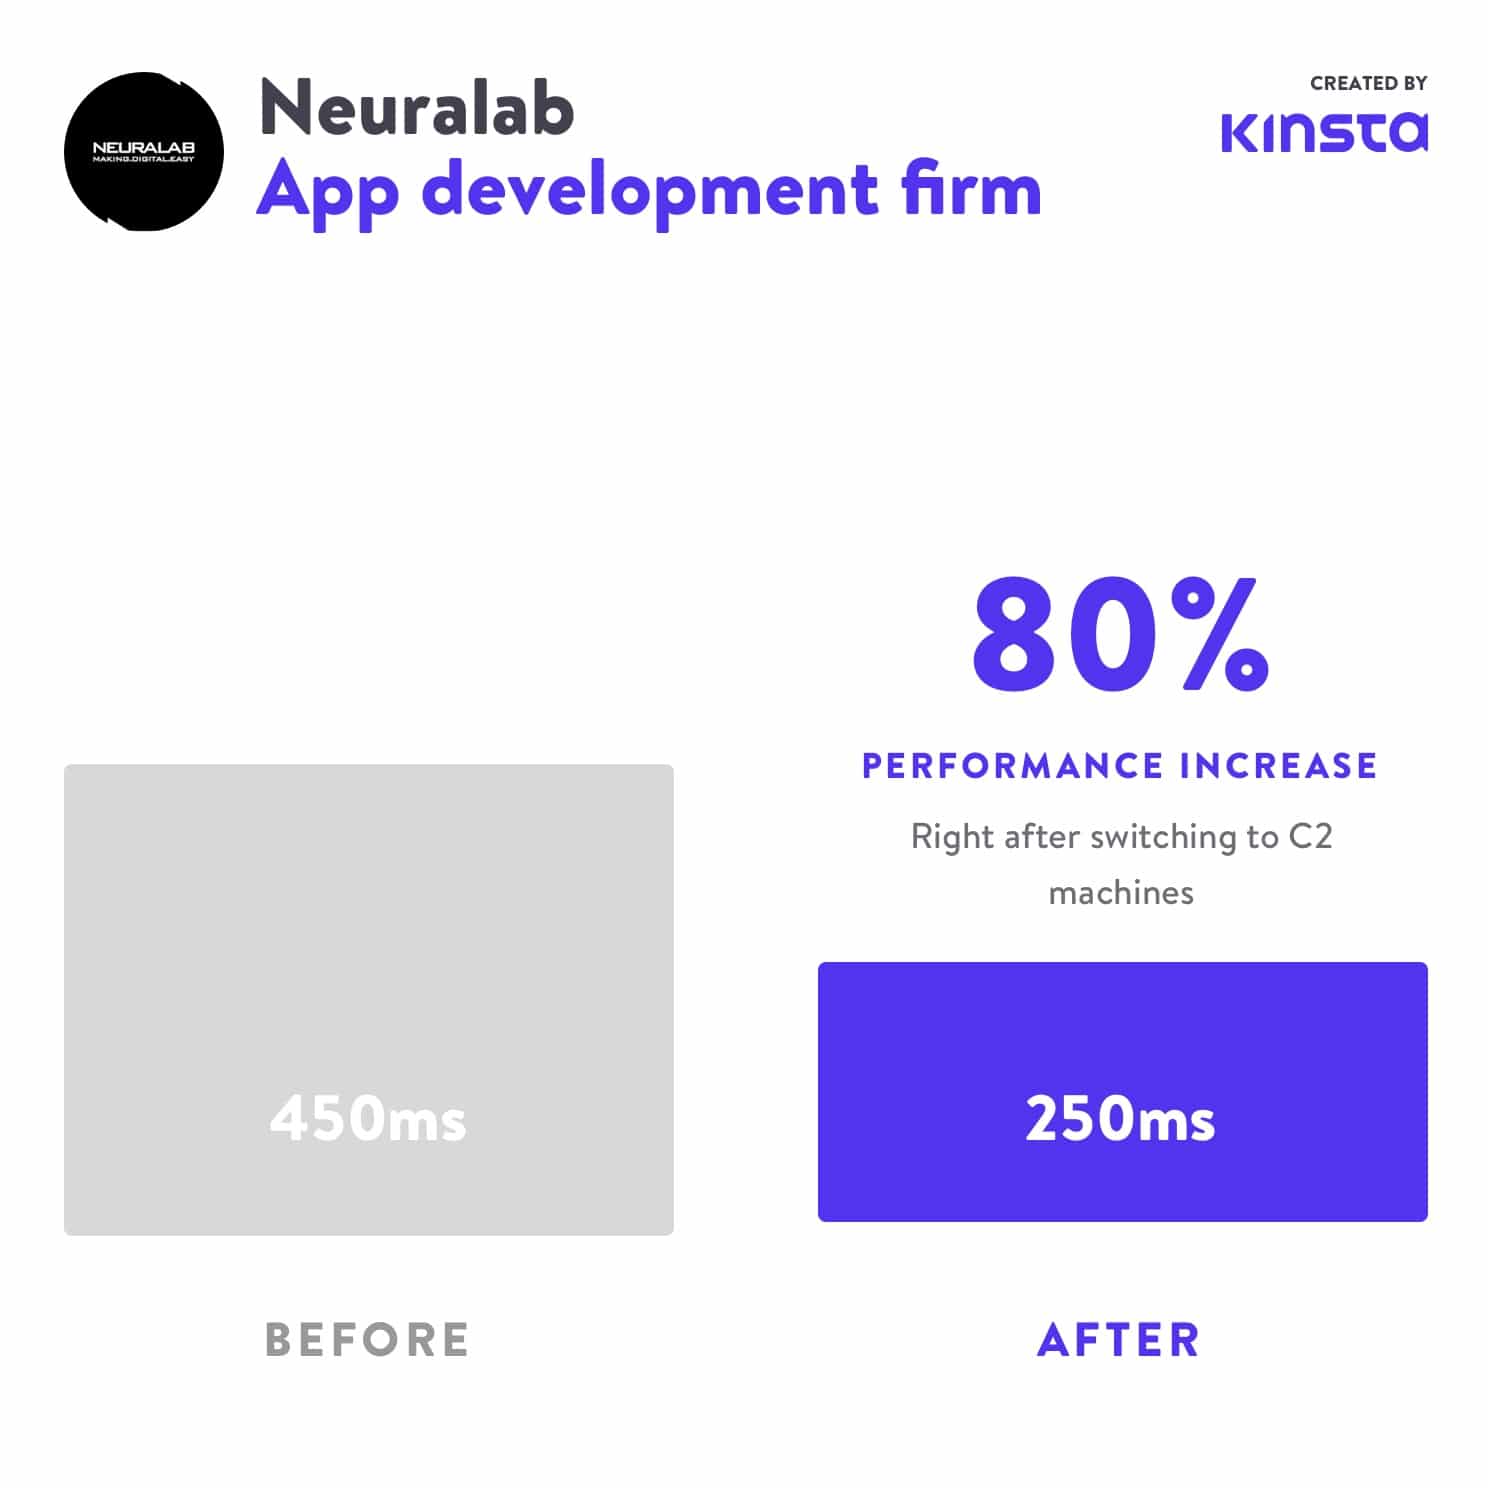 O Neuralab viu um aumento de desempenho de 80% após a mudança para o C2.